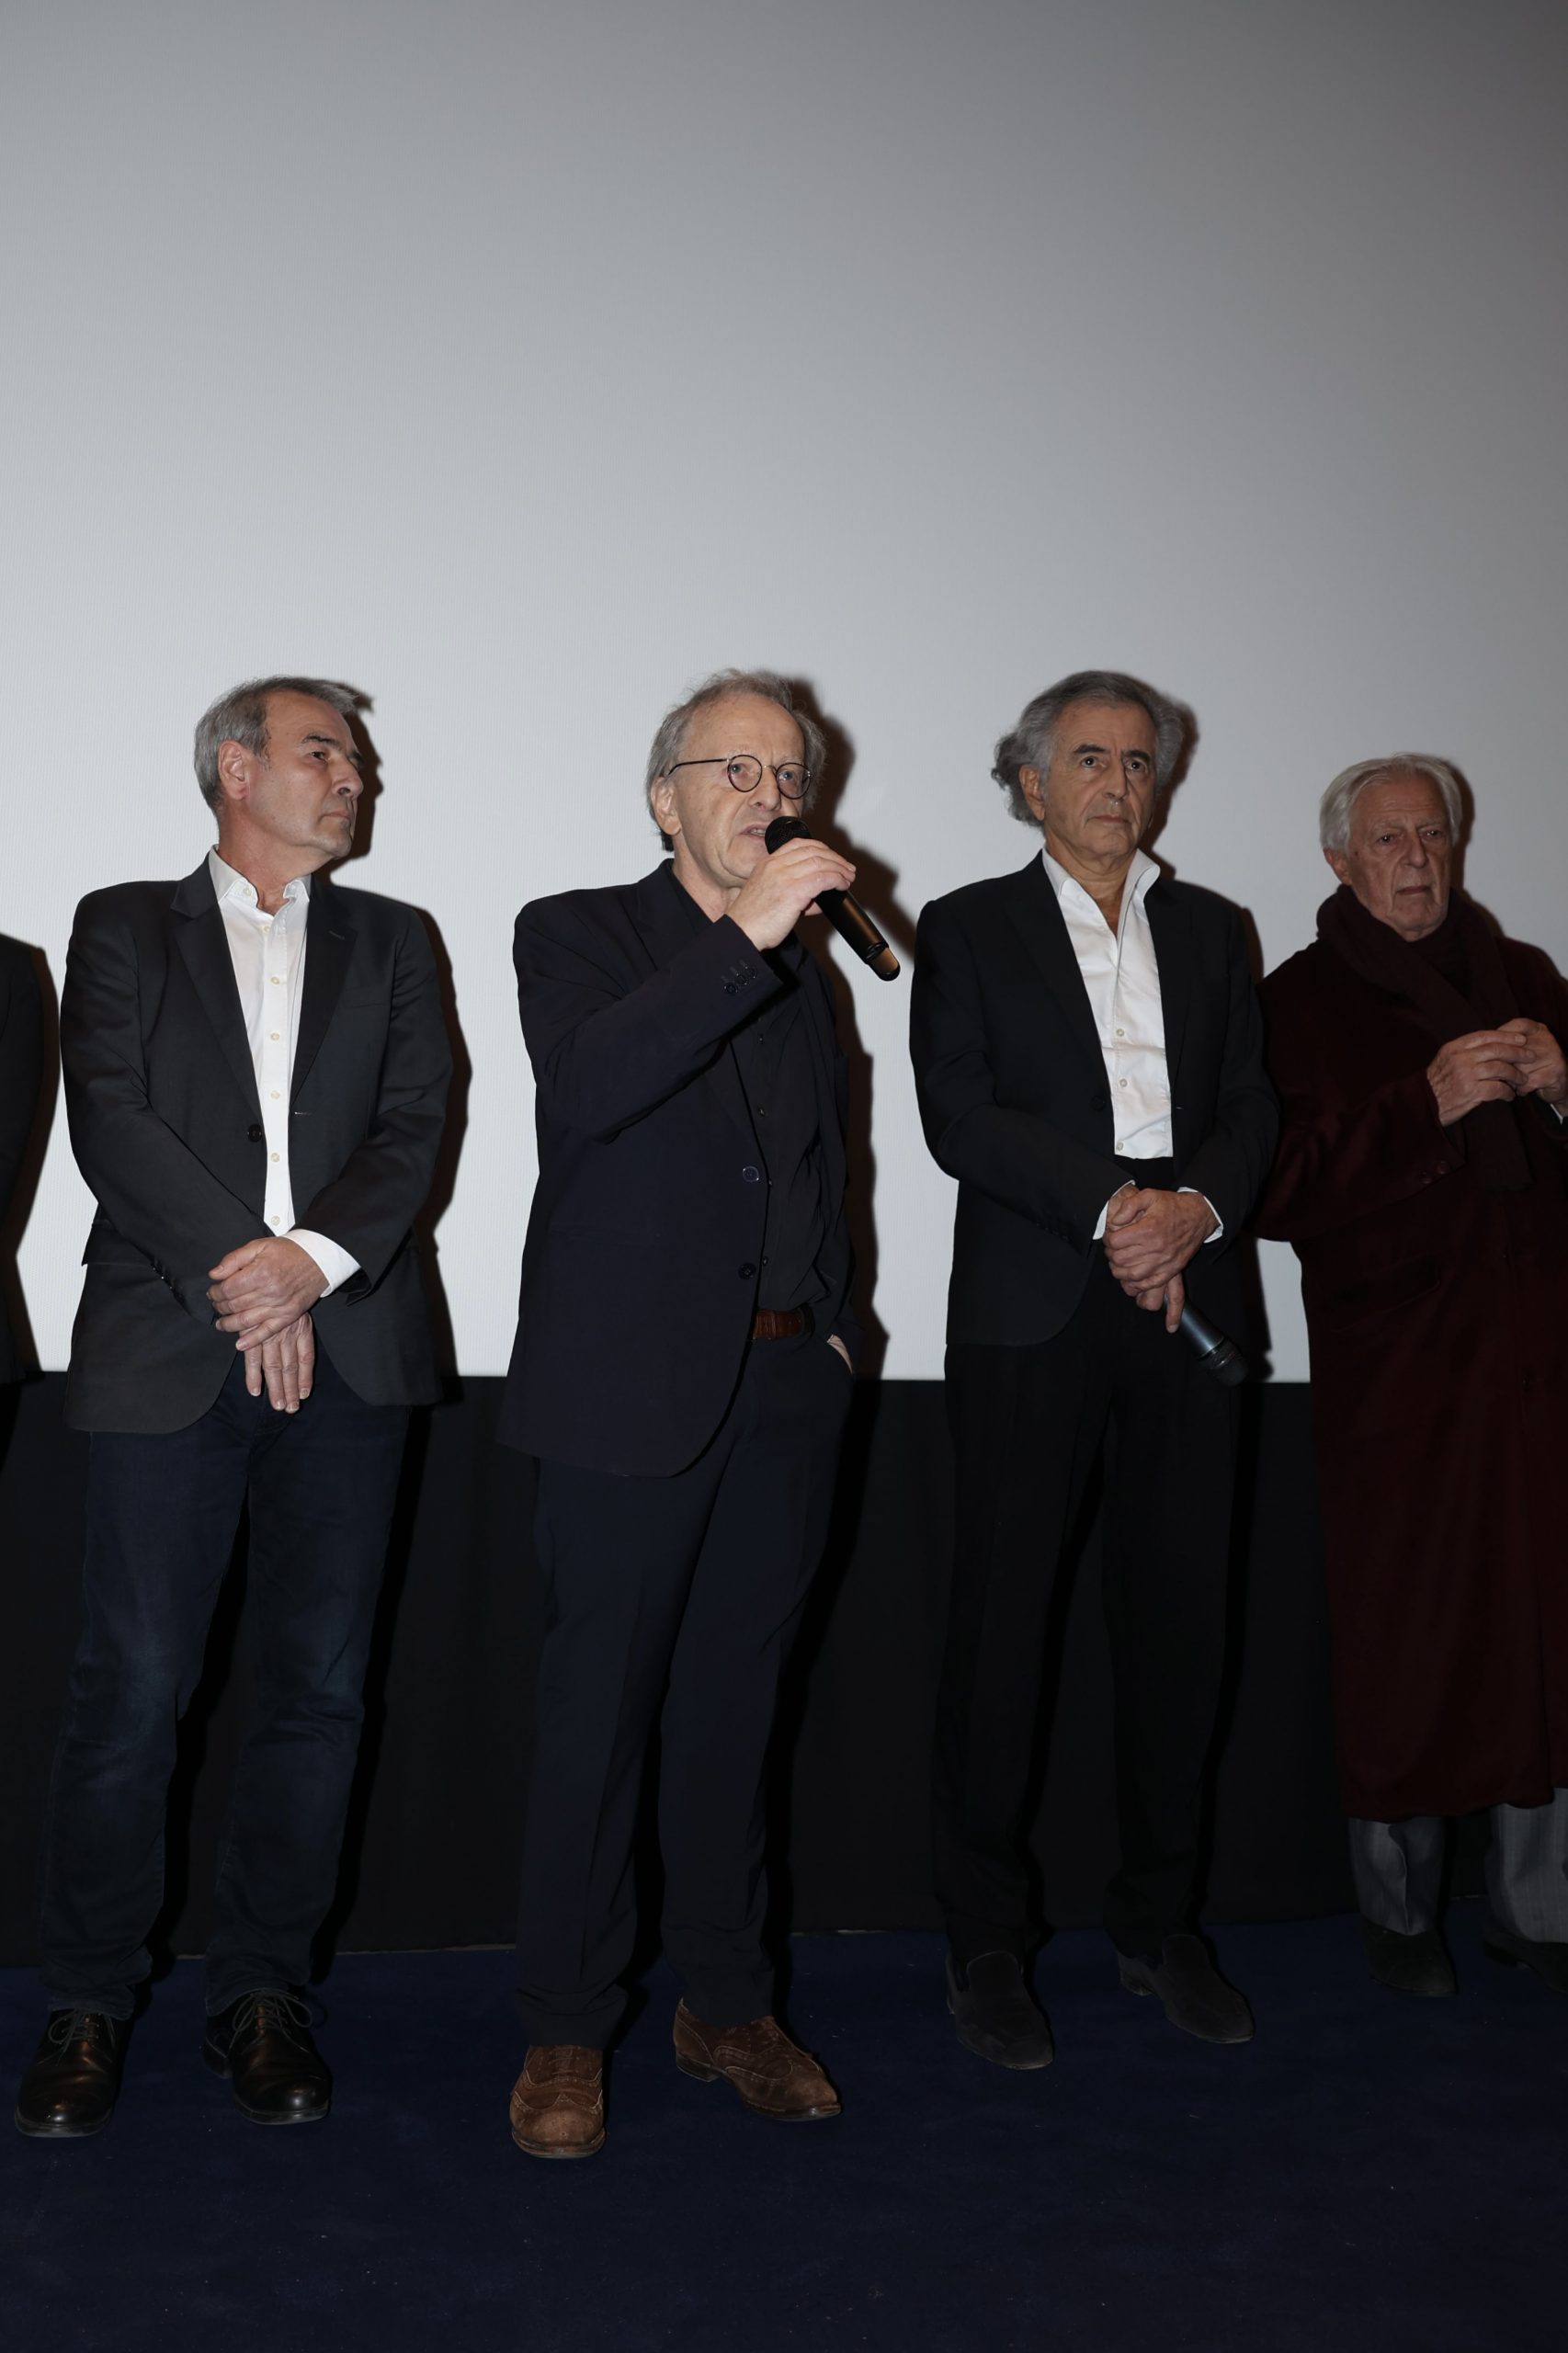 Marc Roussel, François Margolin, Bernard-Henri Lévy, Gilles Hertzog, at the preview of BHL's film, "Slava Ukraini", on 6 February 2023 at the Balzac. Photo: Igor Shabalin